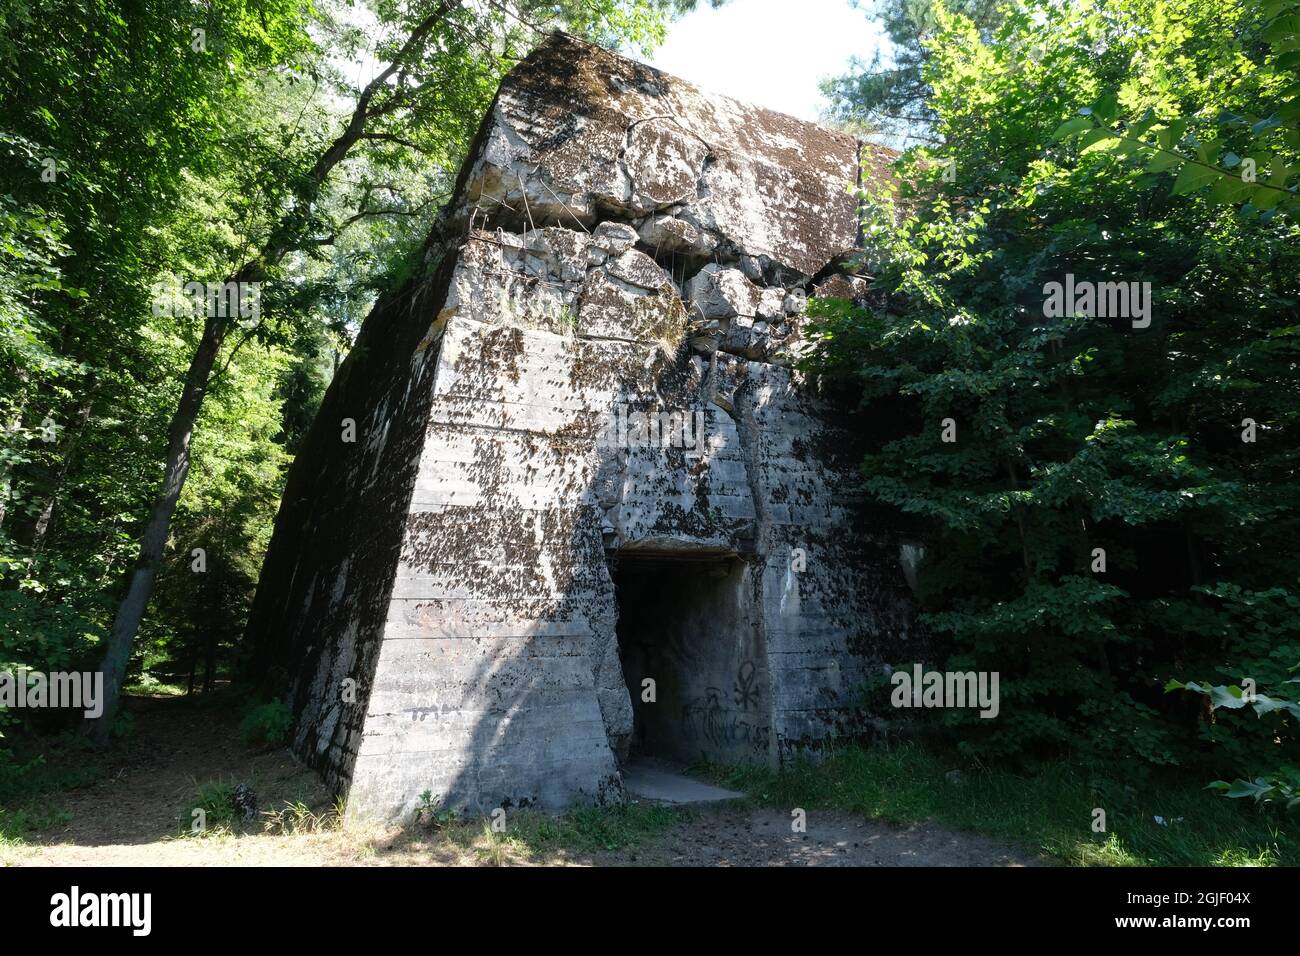 Pozezdrze, Polonia - 20 luglio 2021: Il bunker di Heinrich Himmler presso il campo di comando delle SS Hochwald costruito dall'Organizzazione Todt. Foto Stock